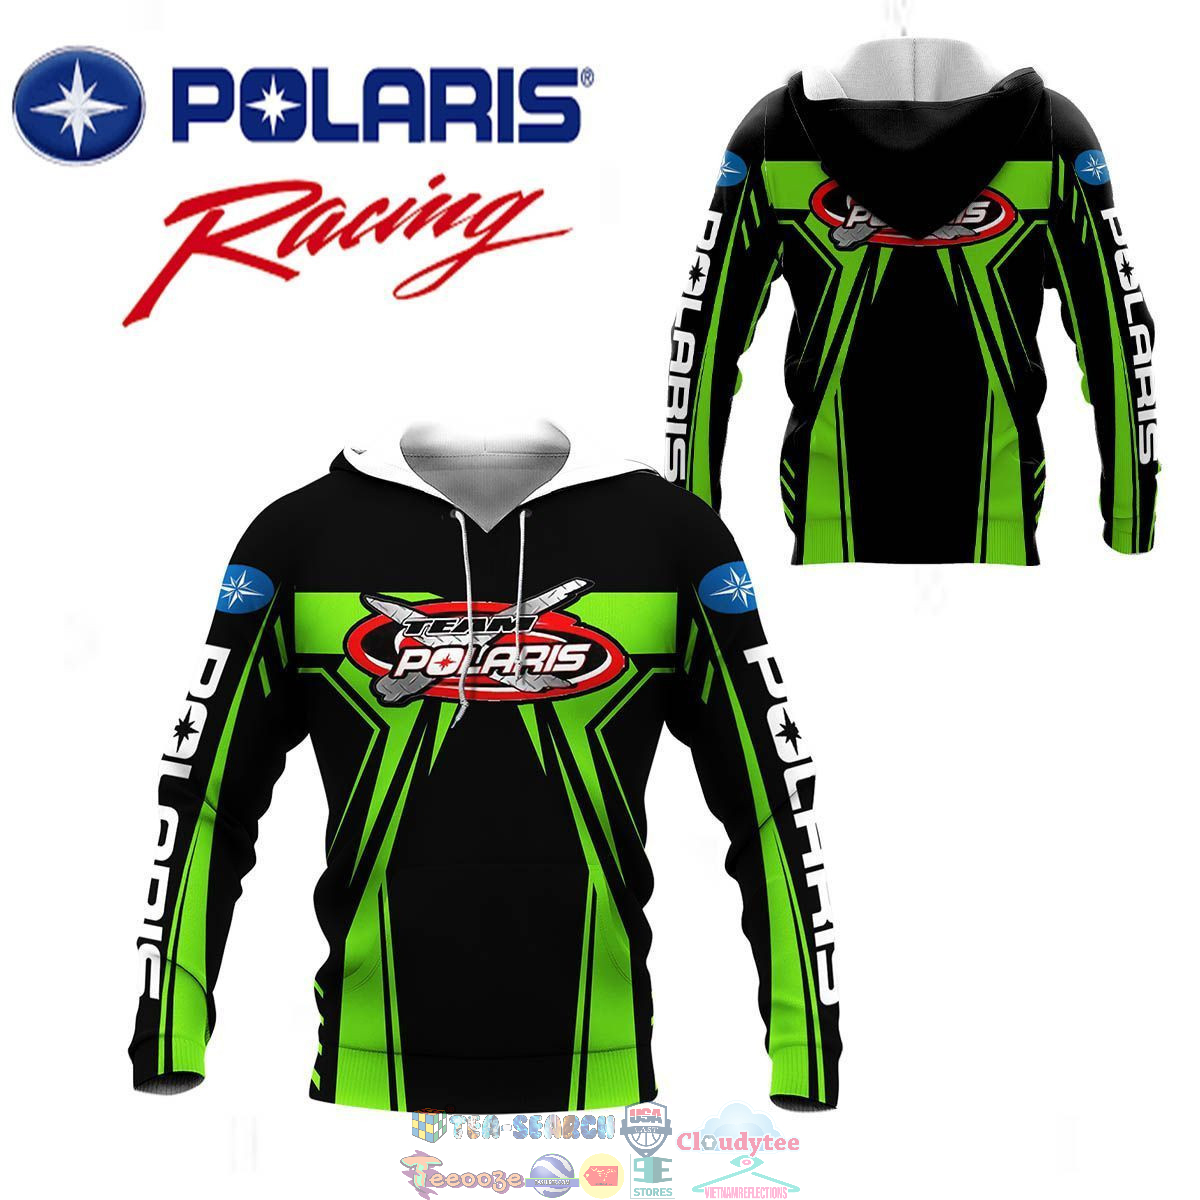 Polaris Racing Team ver 6 3D hoodie and t-shirt